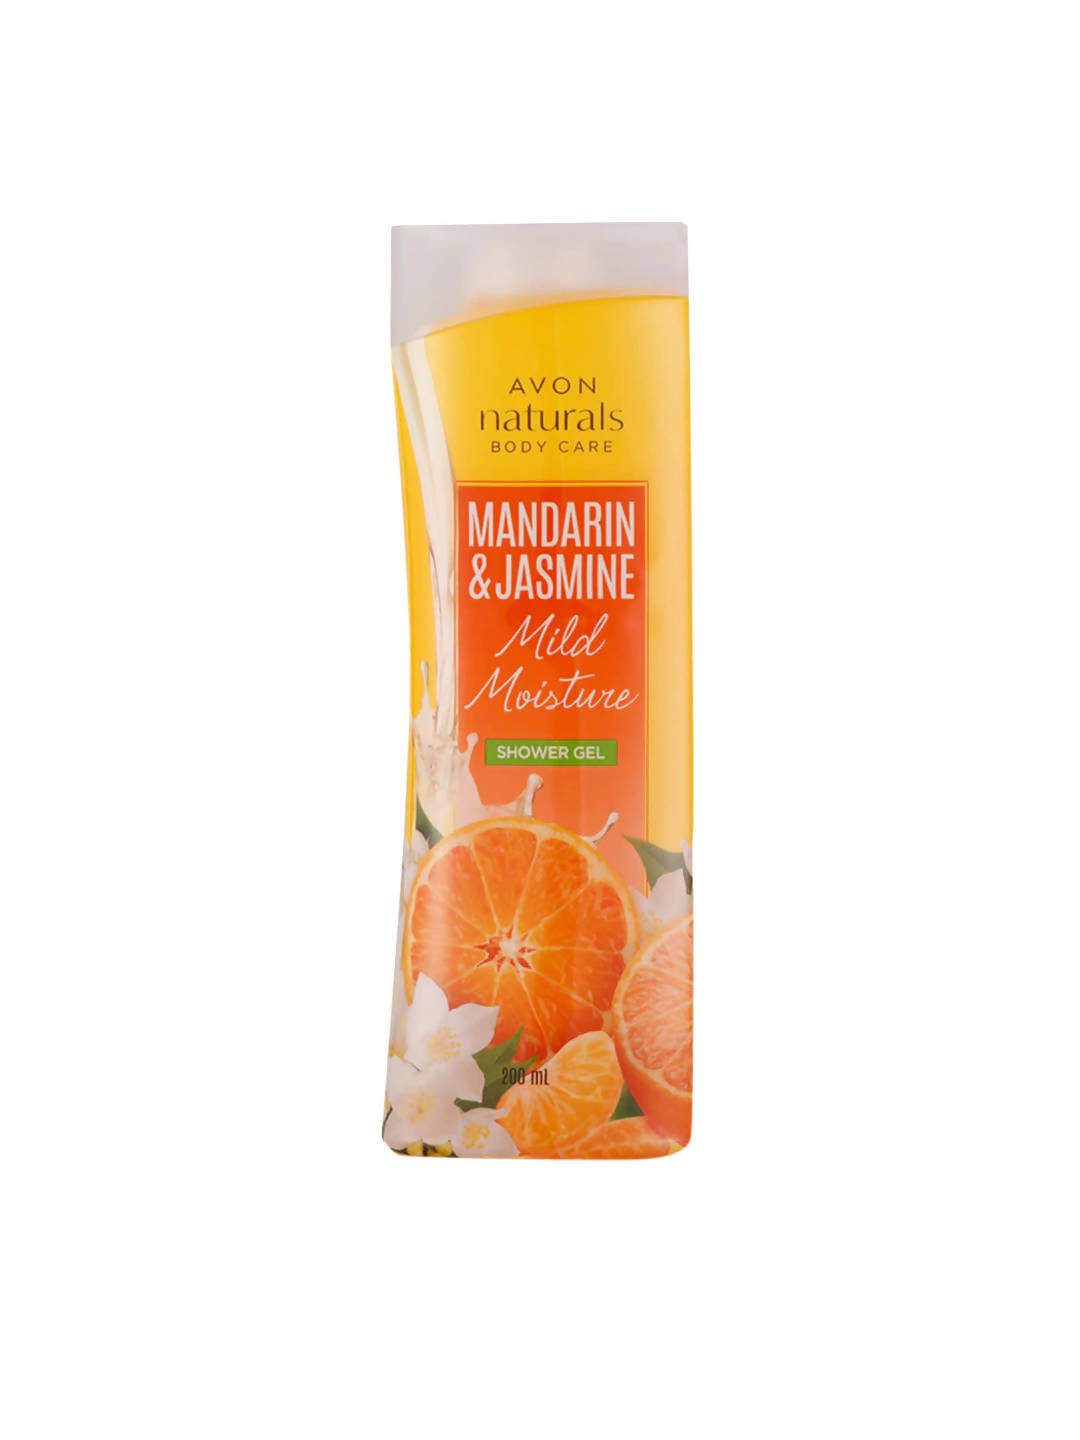 Avon Naturals Body Care Mandarin & Jasmine Mild Moisture Shower gel 